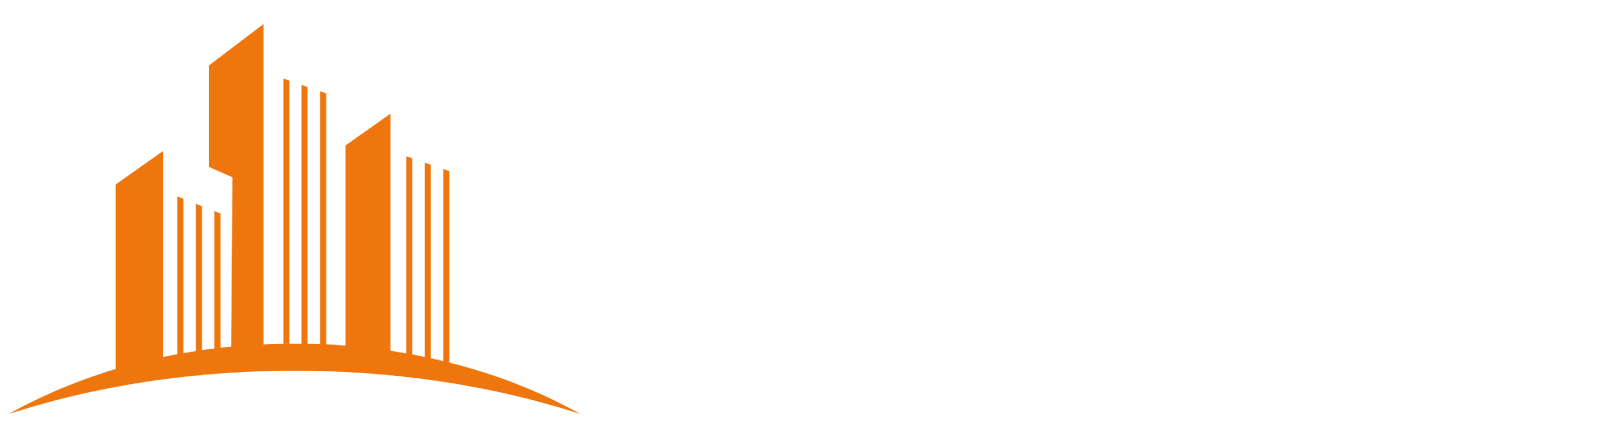 Logo sito dell'associazione degli spazi flessibili